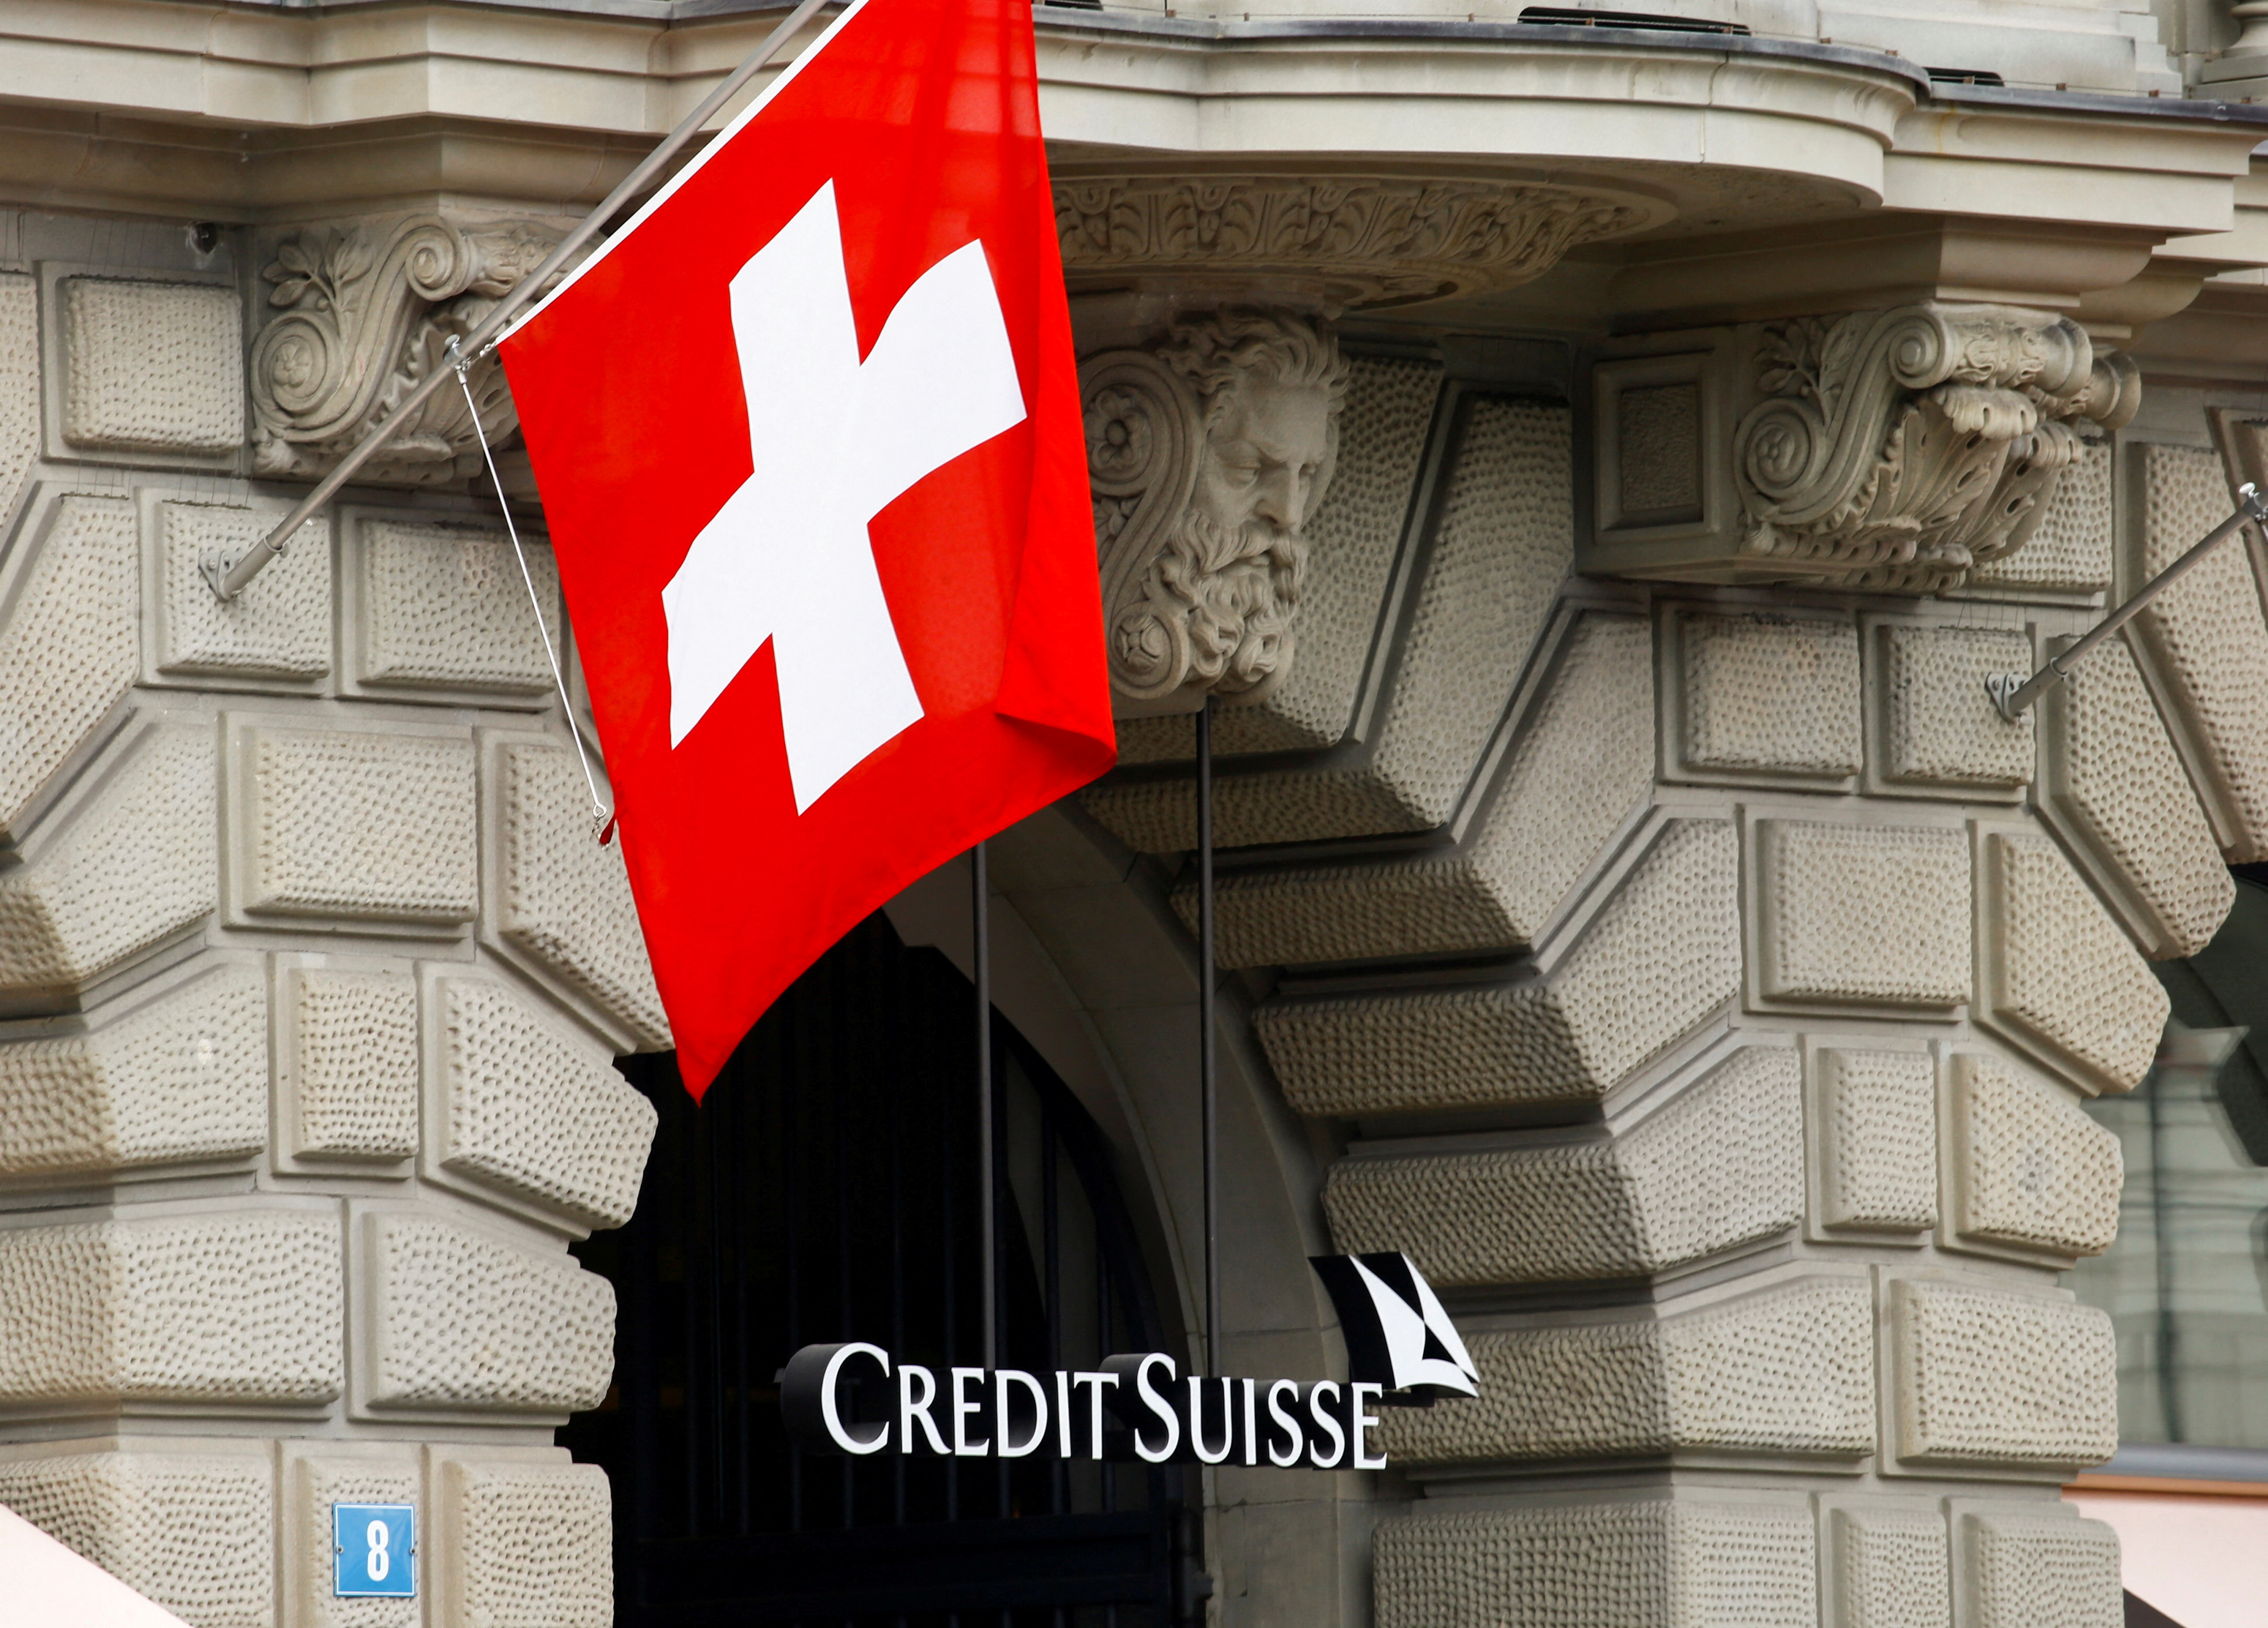 Casa central del Credit Suisse en Zurich, Suiza (REUTERS/Arnd Wiegmann/File Photo)